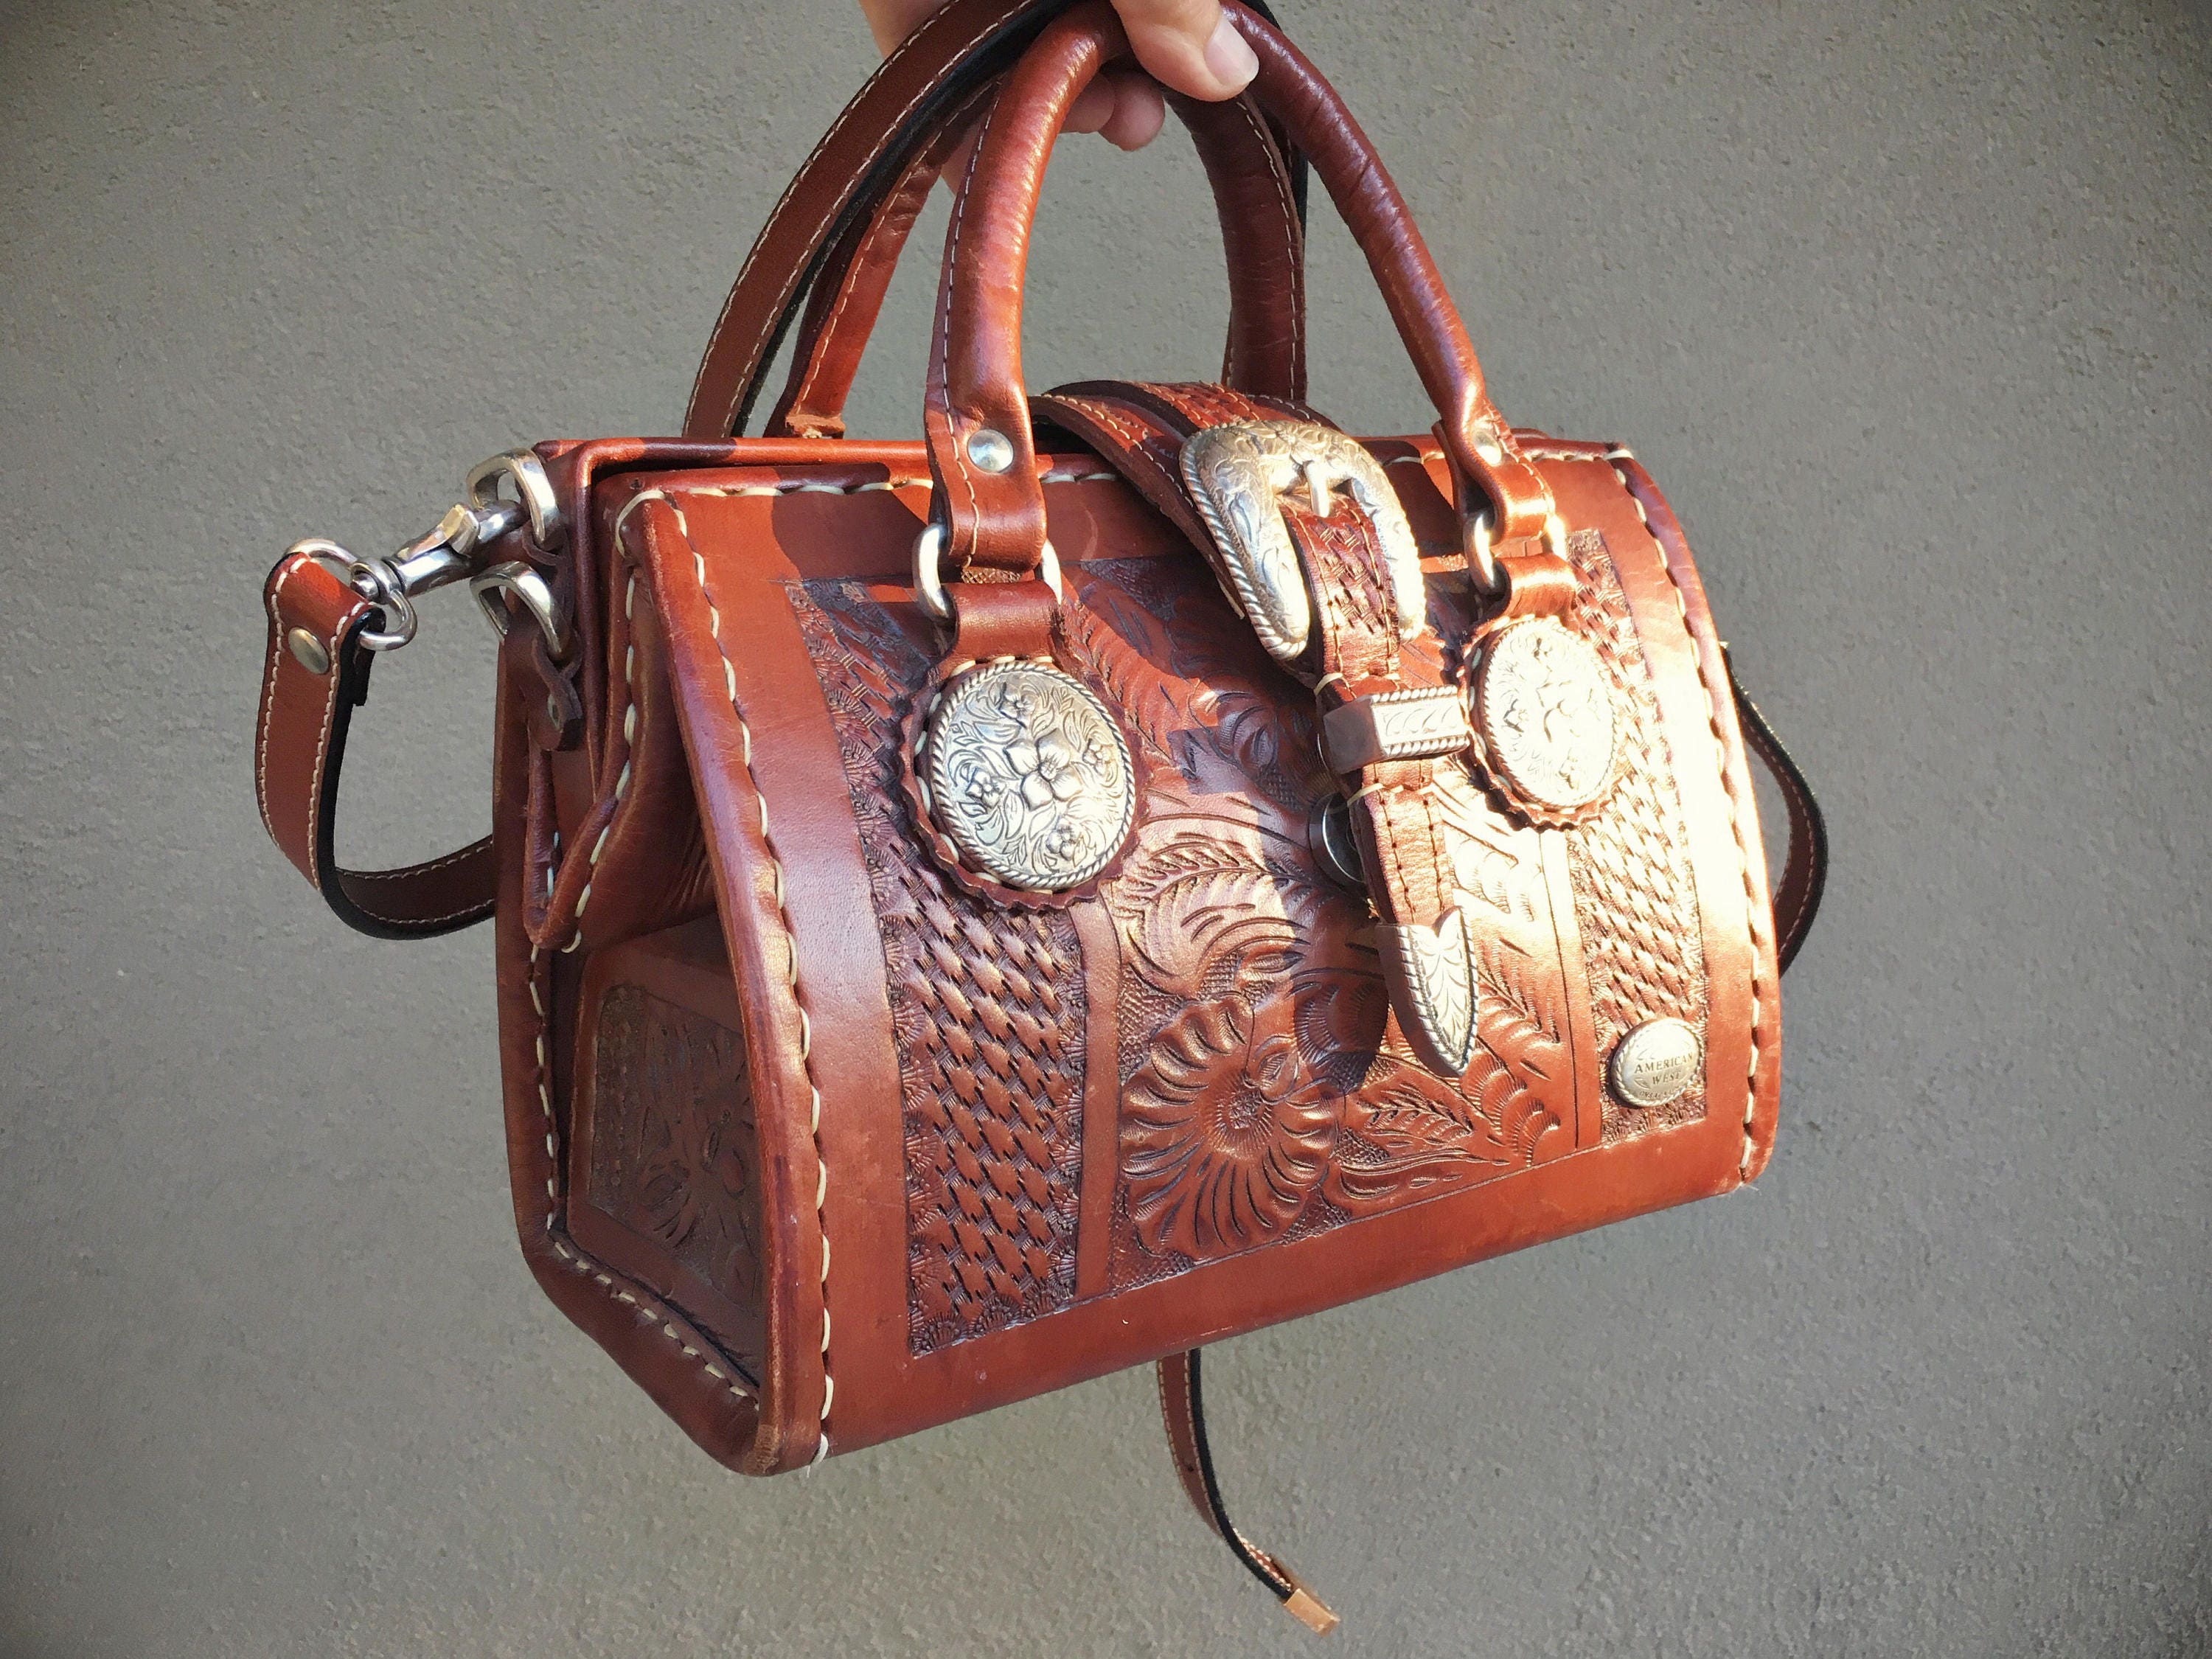 Tooled leather handbags